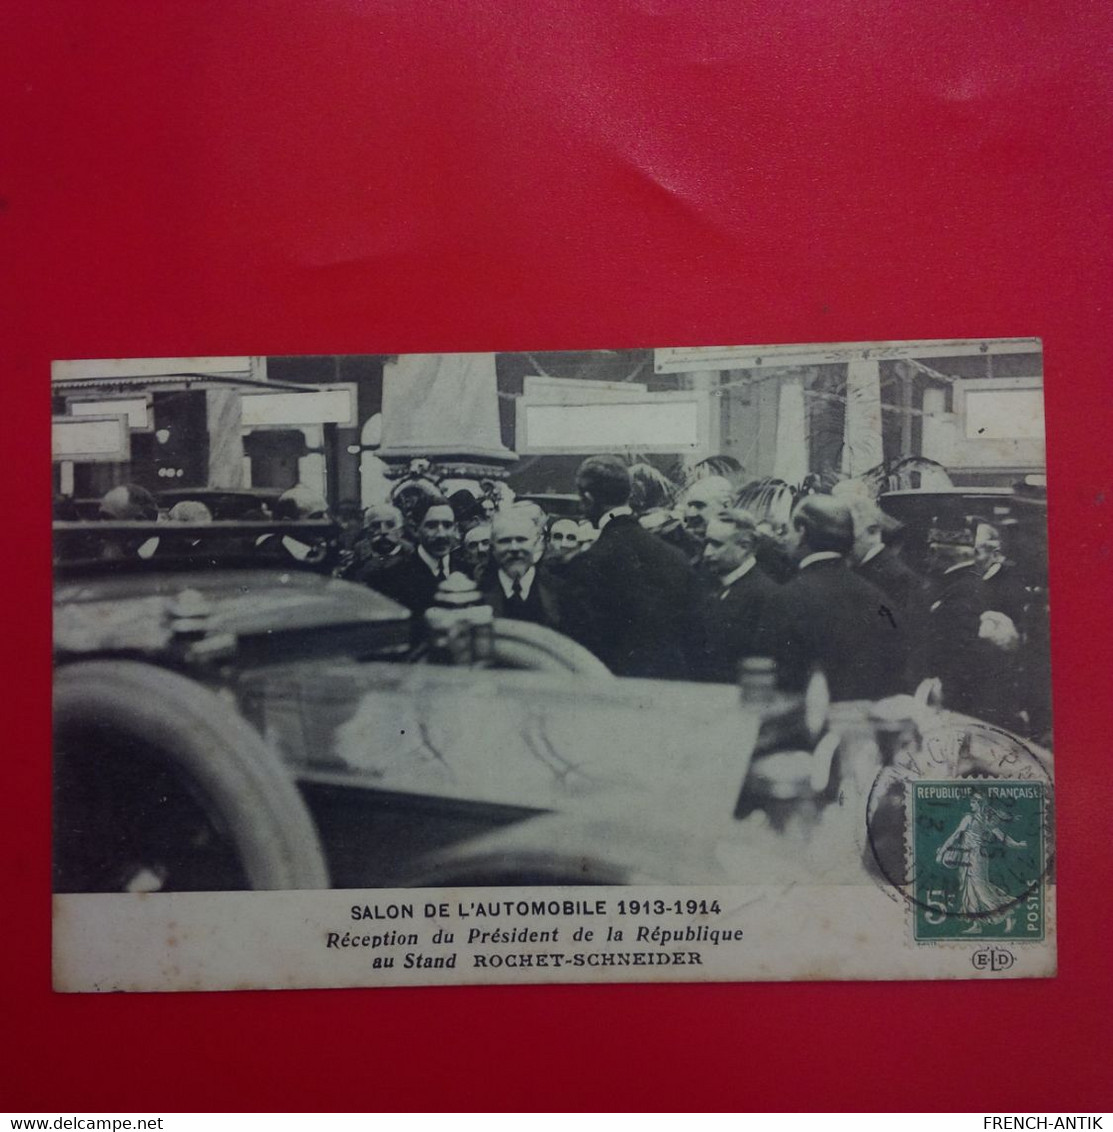 SALON DE L AUTOMOBILE 1913 1914 RECEPTION DU PRESIDENT DE LA REPUBLIQUE POINCARE AU STAND ROCHET SCHNEIDER - Events